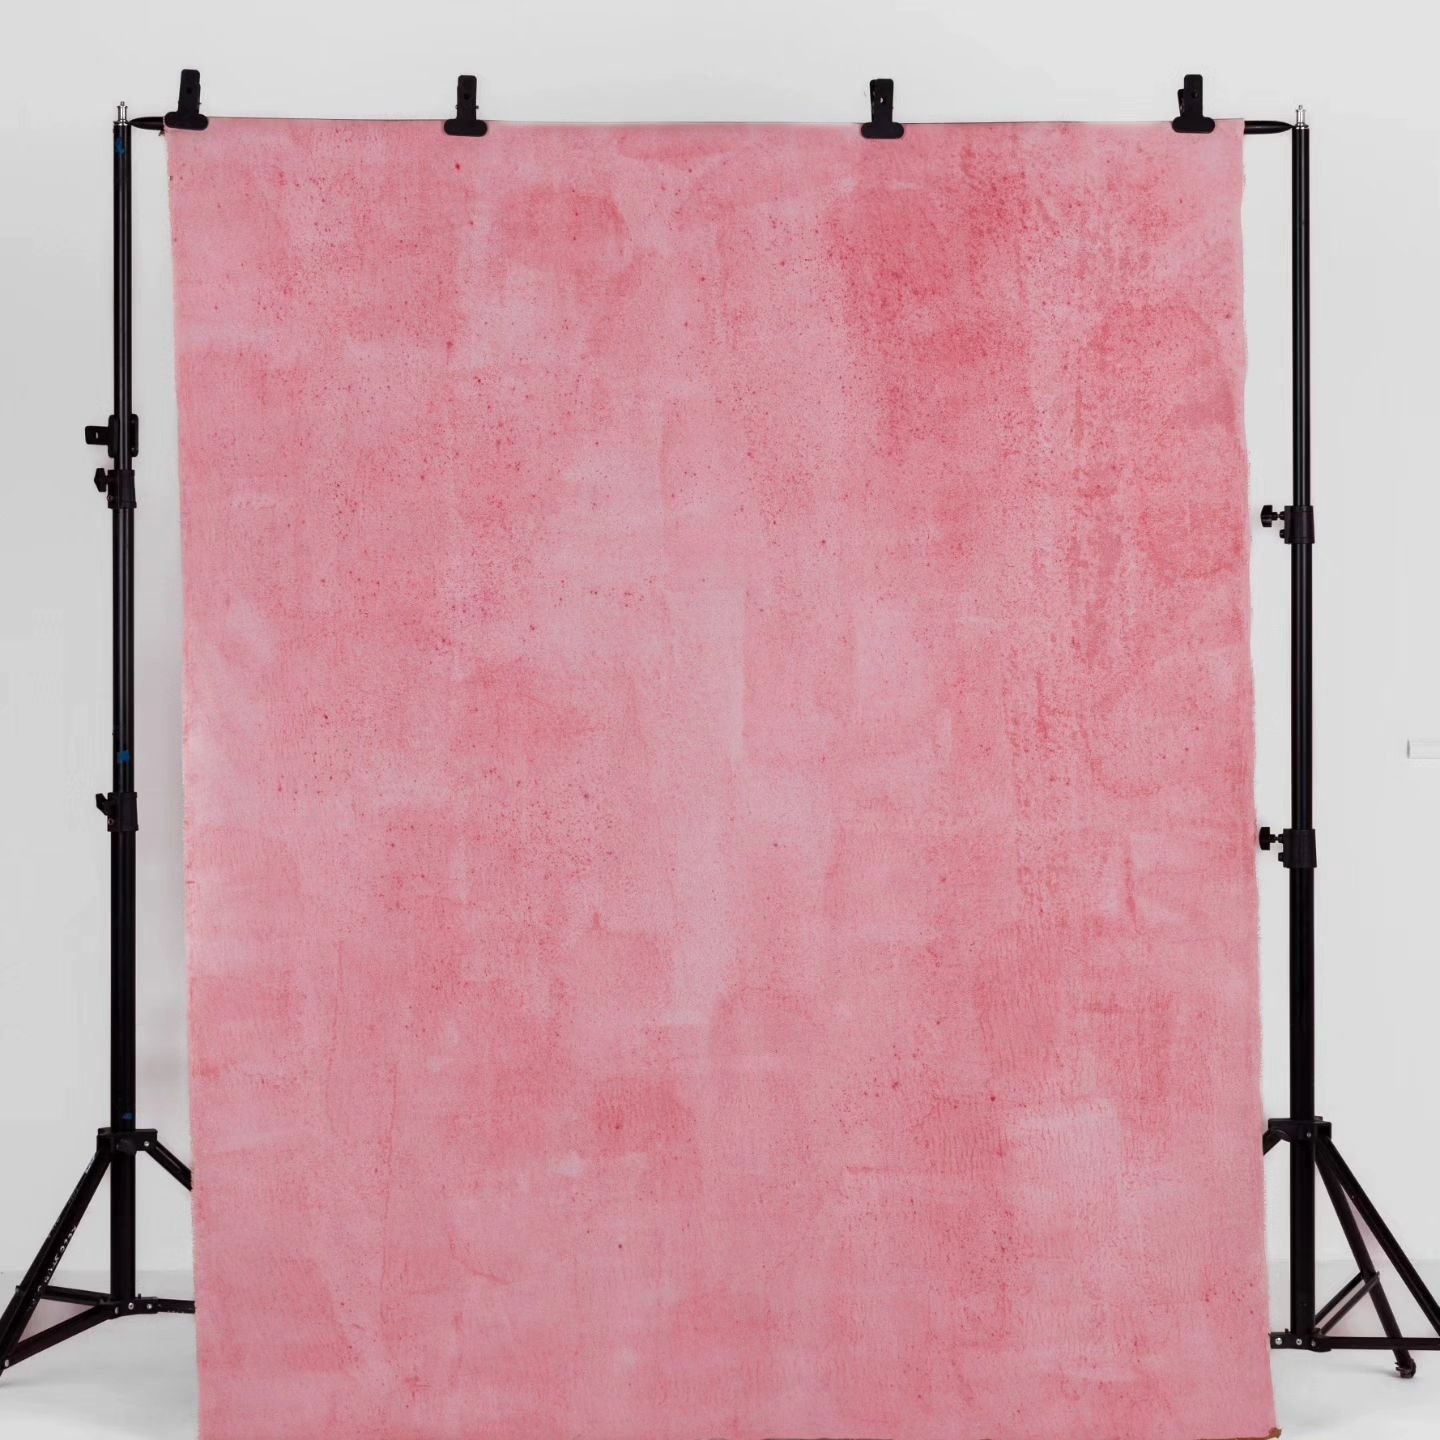 Nowe tła od @silesiabackdrops już dostępne w studio! Model Water Pink to delikatne tło o bardzo przyjemnym kolorze akwarelowego r&oacute;żu. Idealnie sprawdzi się w kobiecych sesjach wizerunkowych z jasną stylizacją. Tło przeznaczone do indywidualnyc